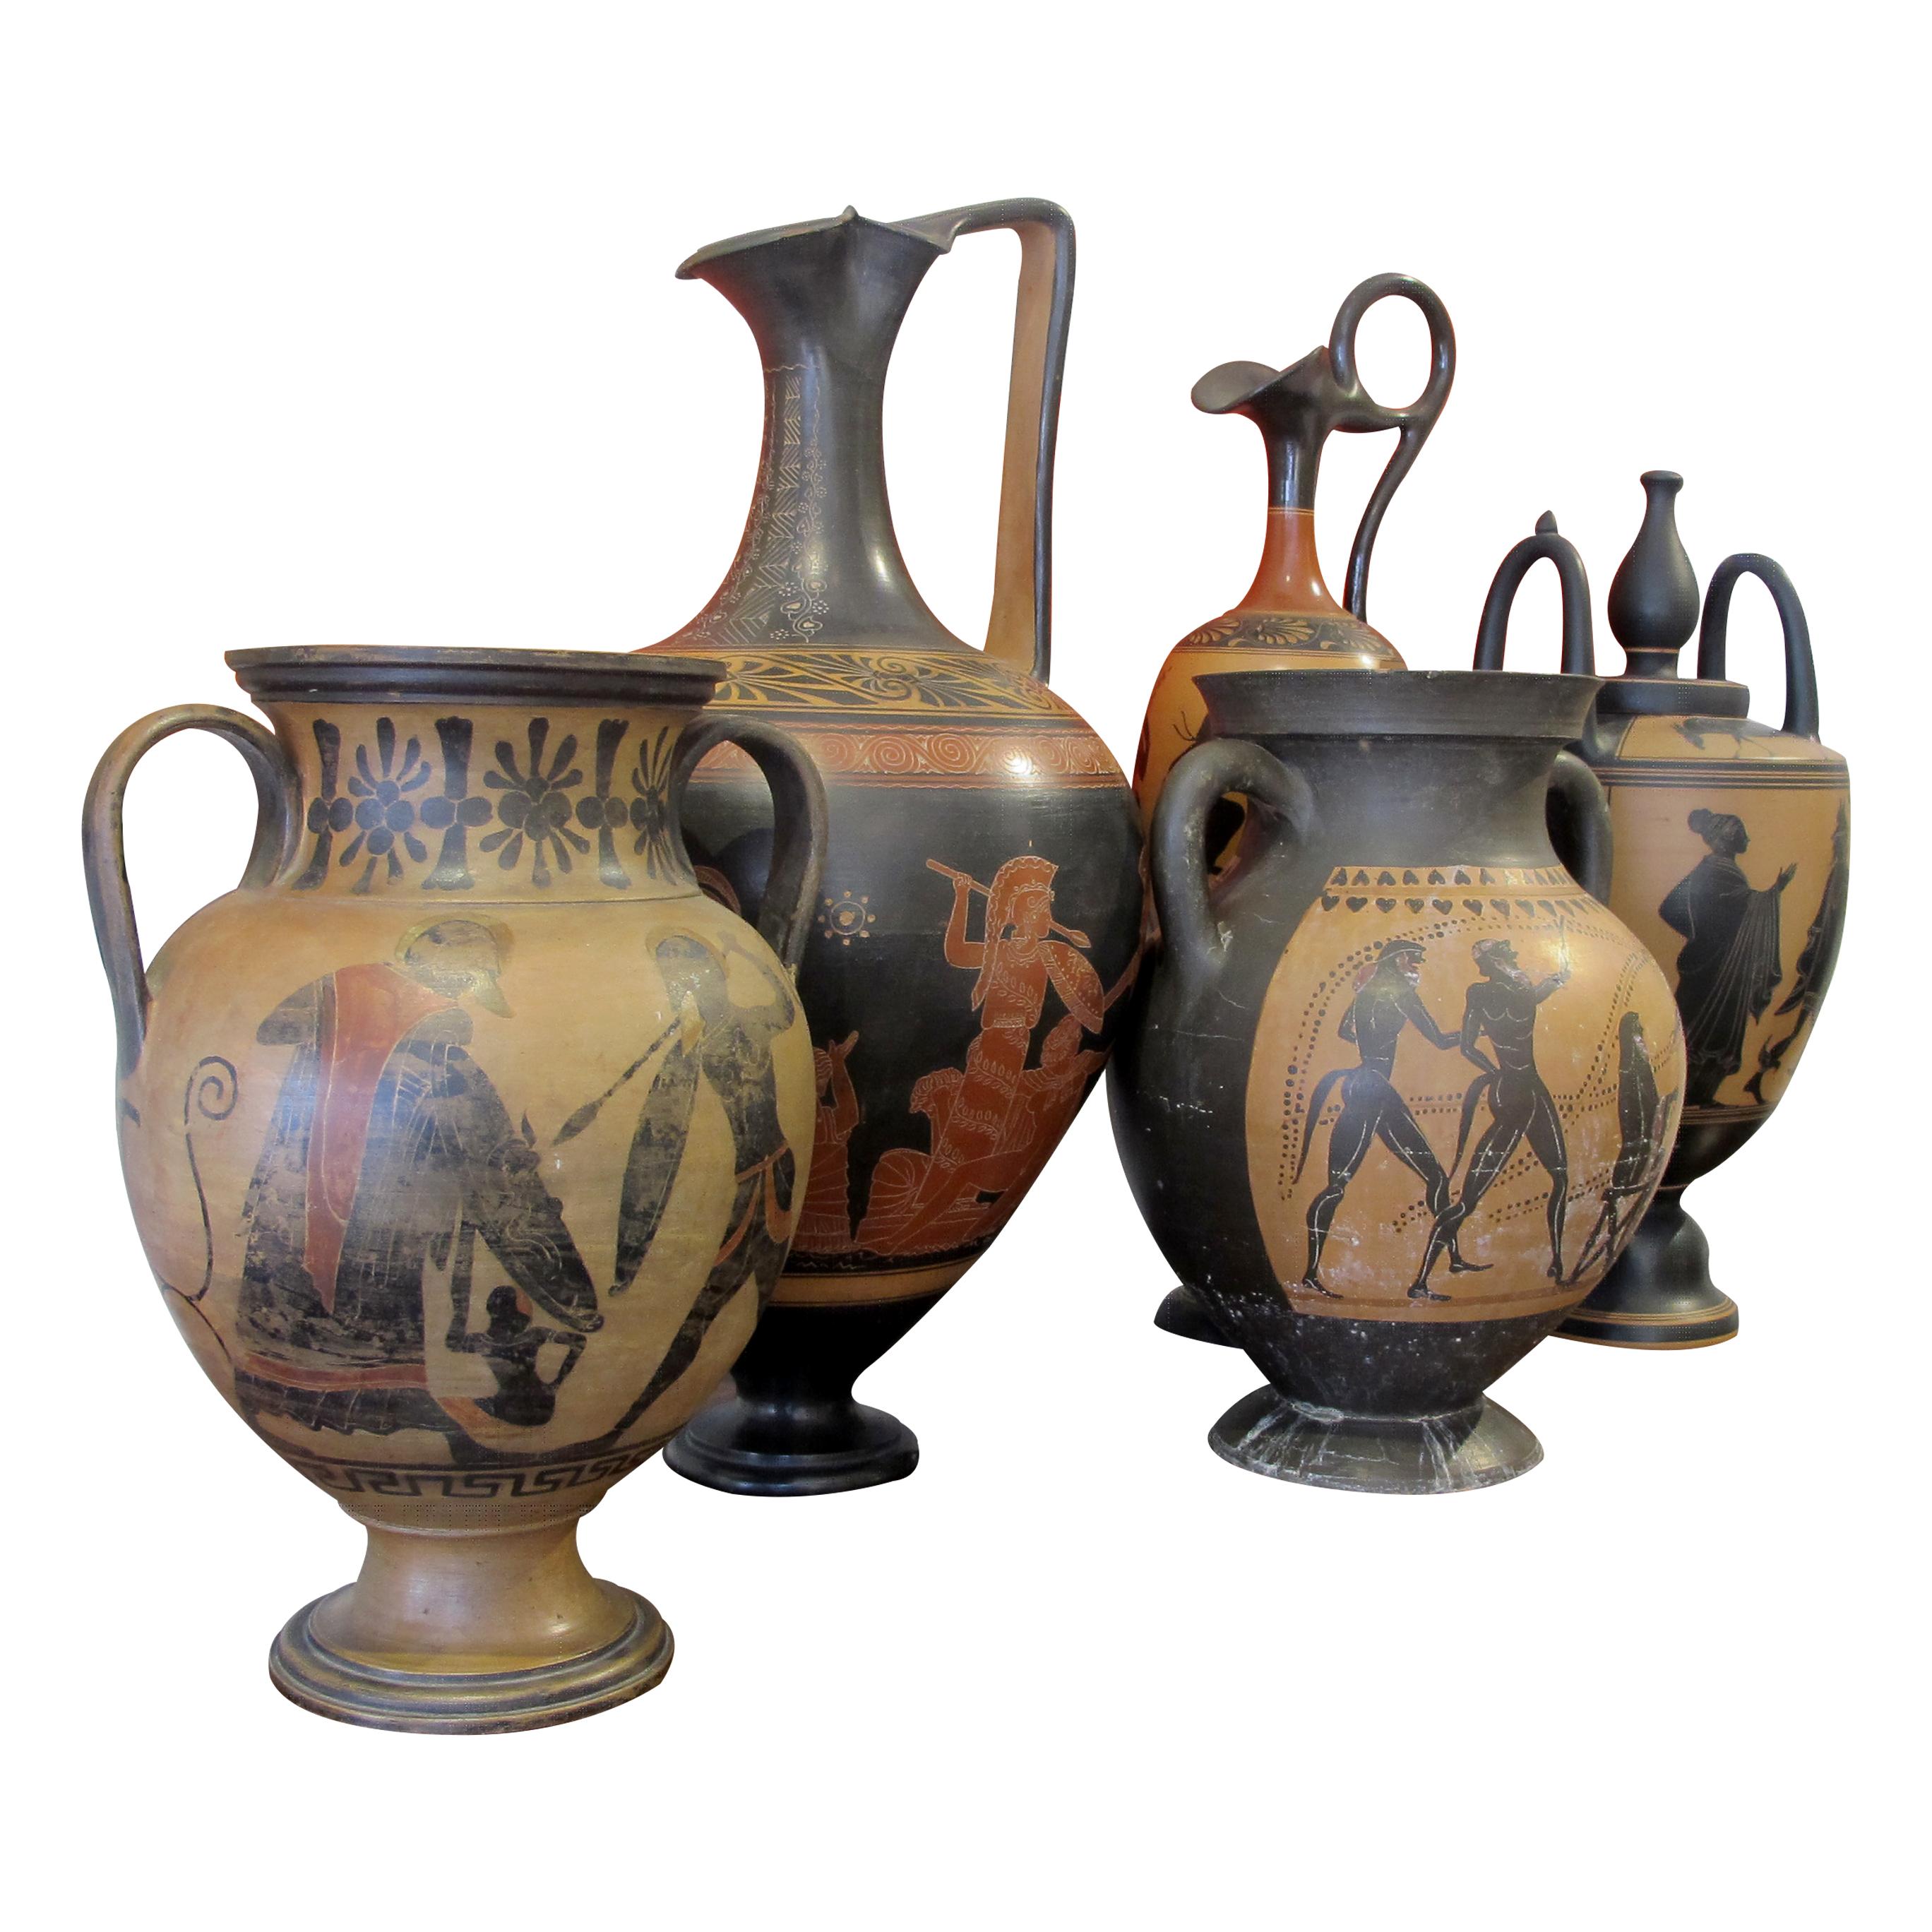 Dies ist ein prächtiger Satz von 5 hochdekorativen Lekythos-Vasen im etruskischen Stil des frühen 20. Jahrhunderts, auch bekannt als schwarzfigurige Keramikmalerei. Figuren und Ornamente wurden mit Formen und Farben, die an Silhouetten erinnern, auf